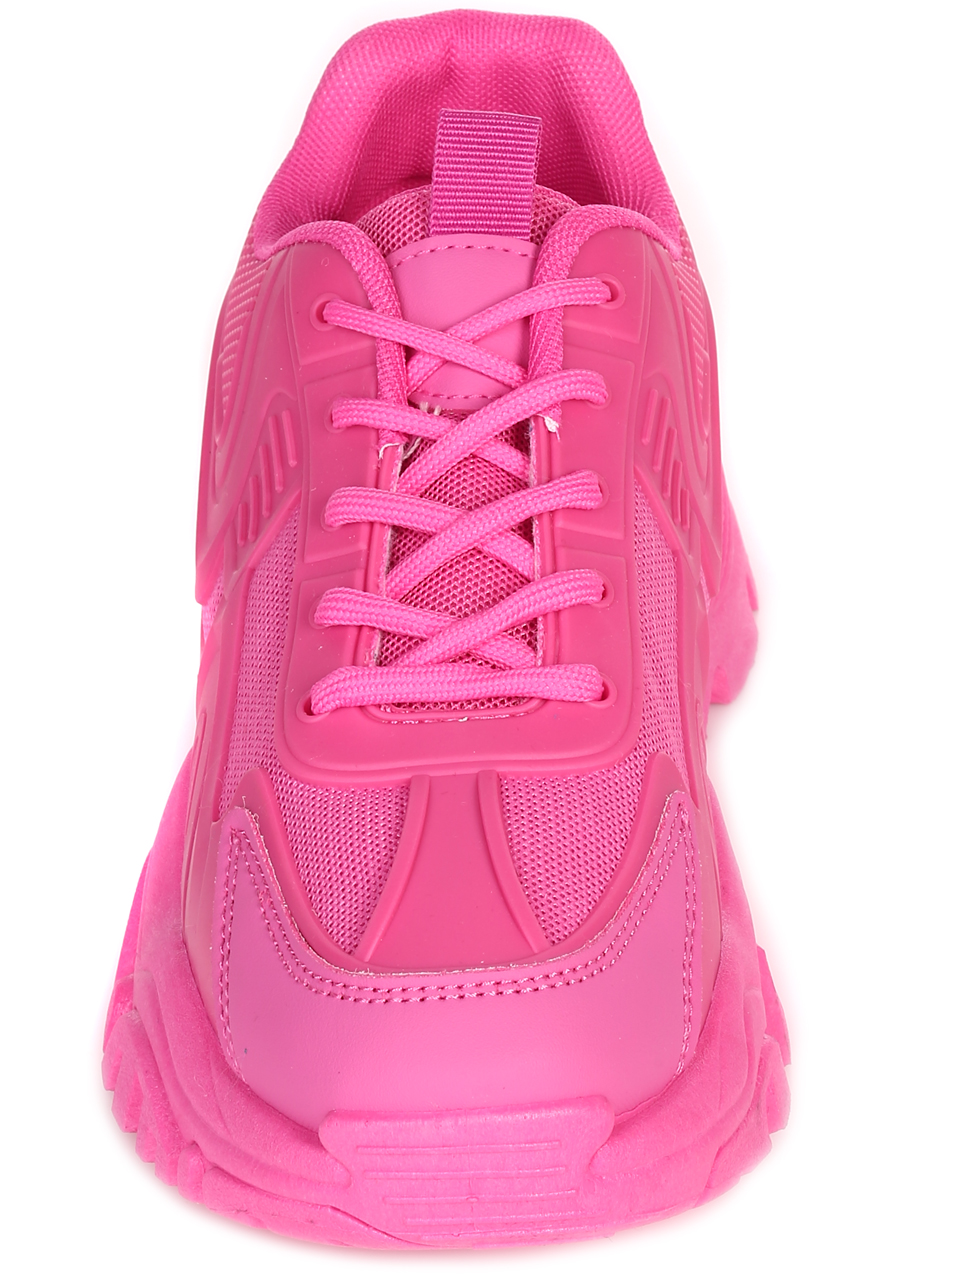 Ежедневни дамски обувки в цвят фуксия 3U-23565 fuchsia